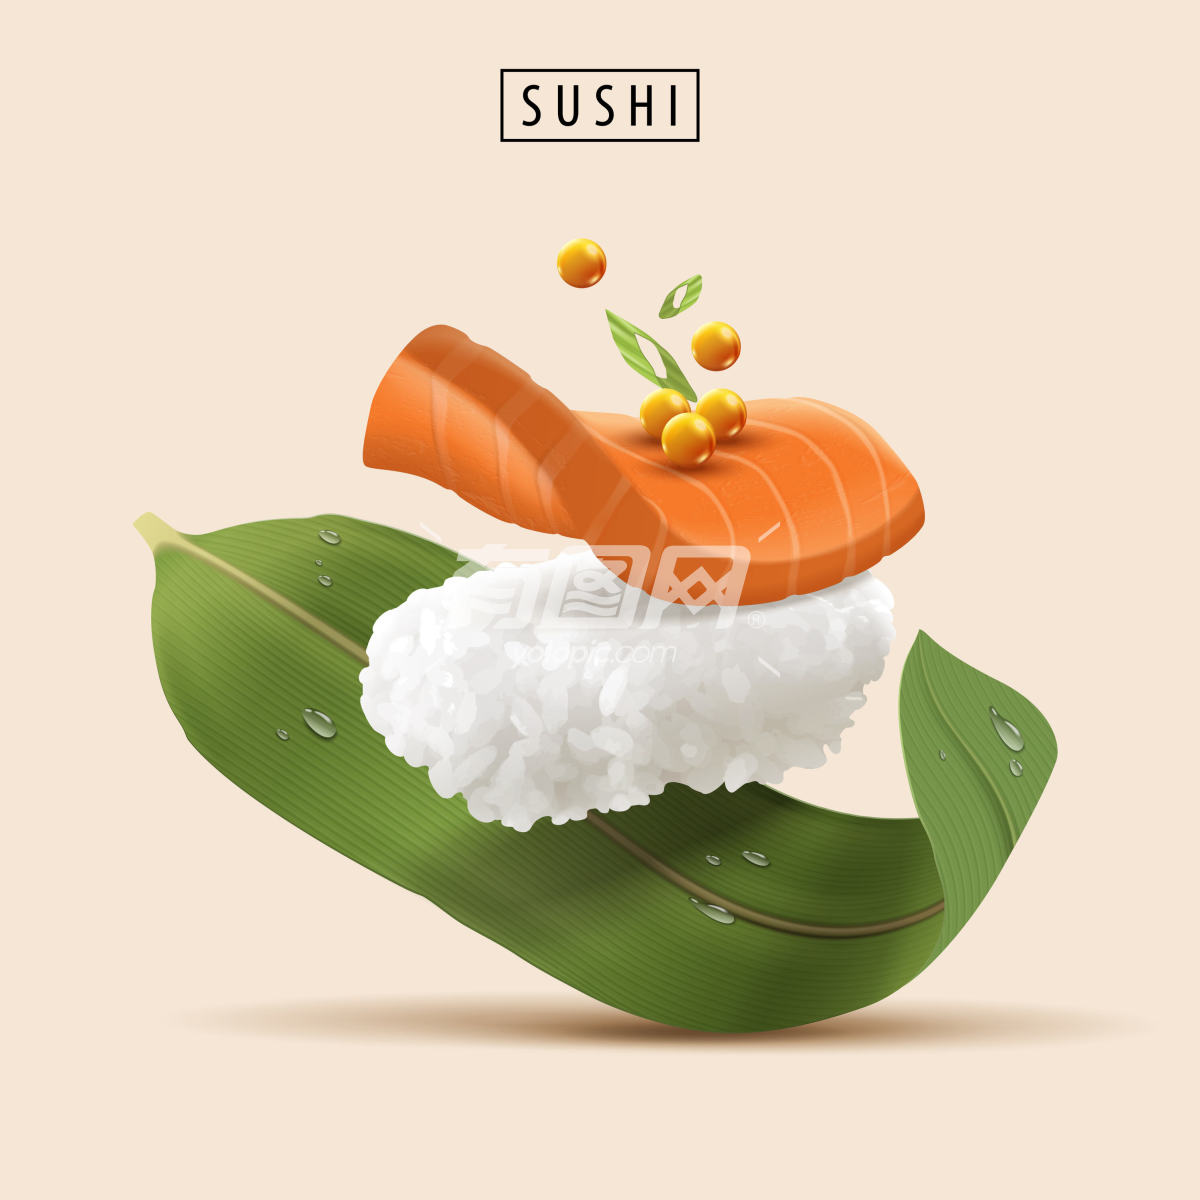 三文鱼寿司广告